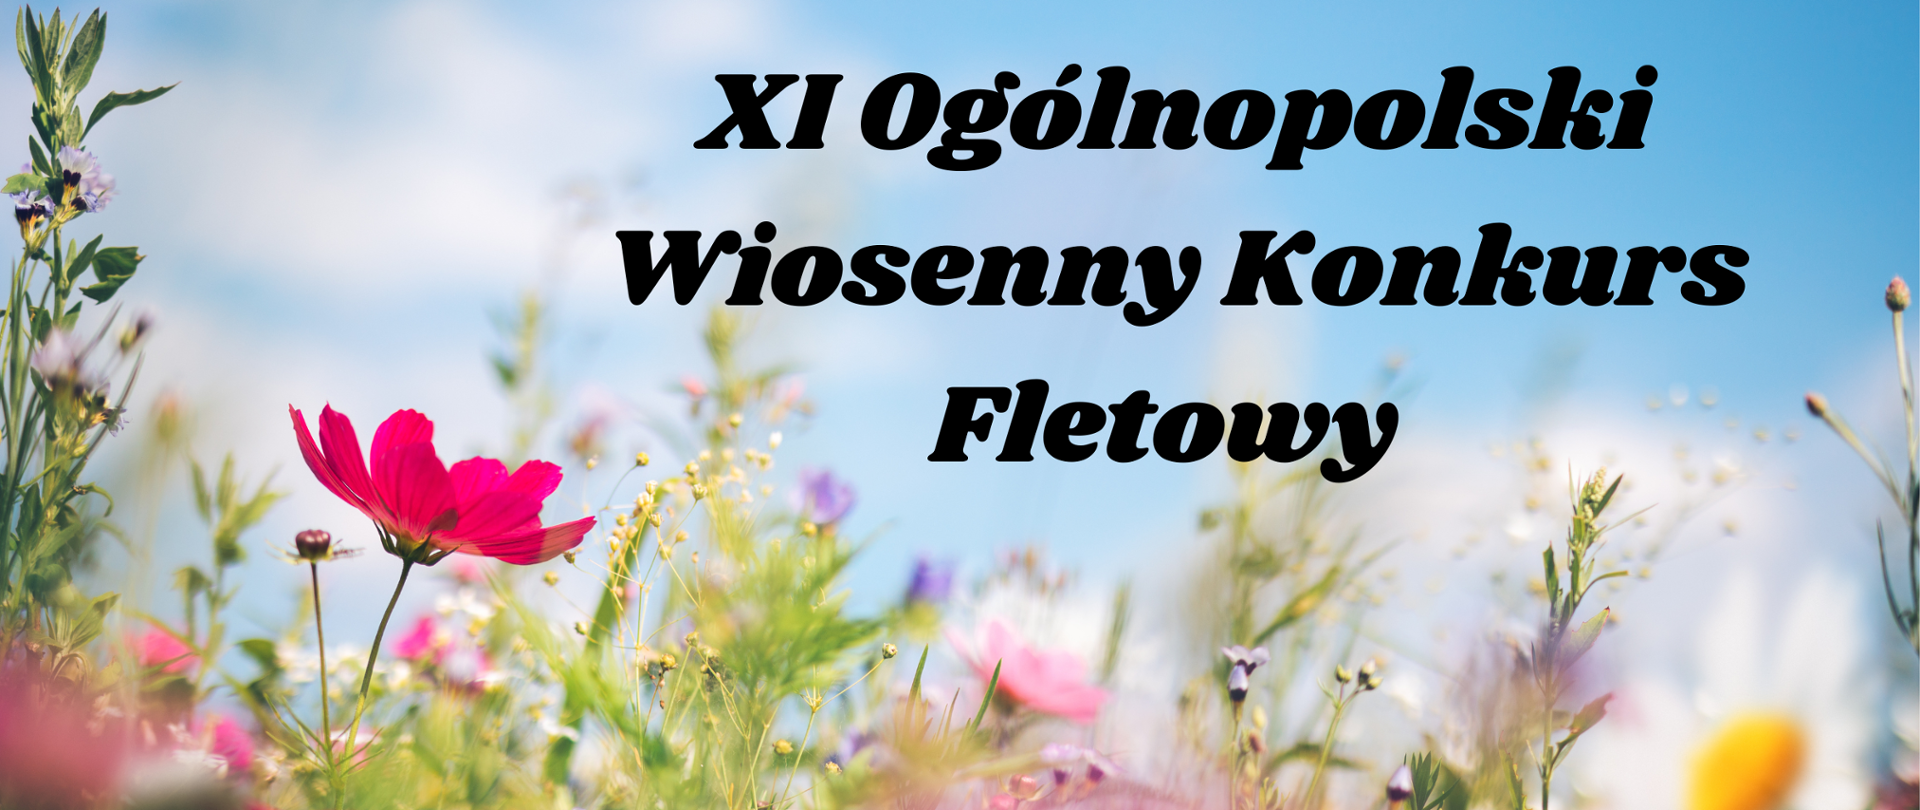 Grafika z napisem XI Ogólnopolski Wiosenny Konkurs Fletowy